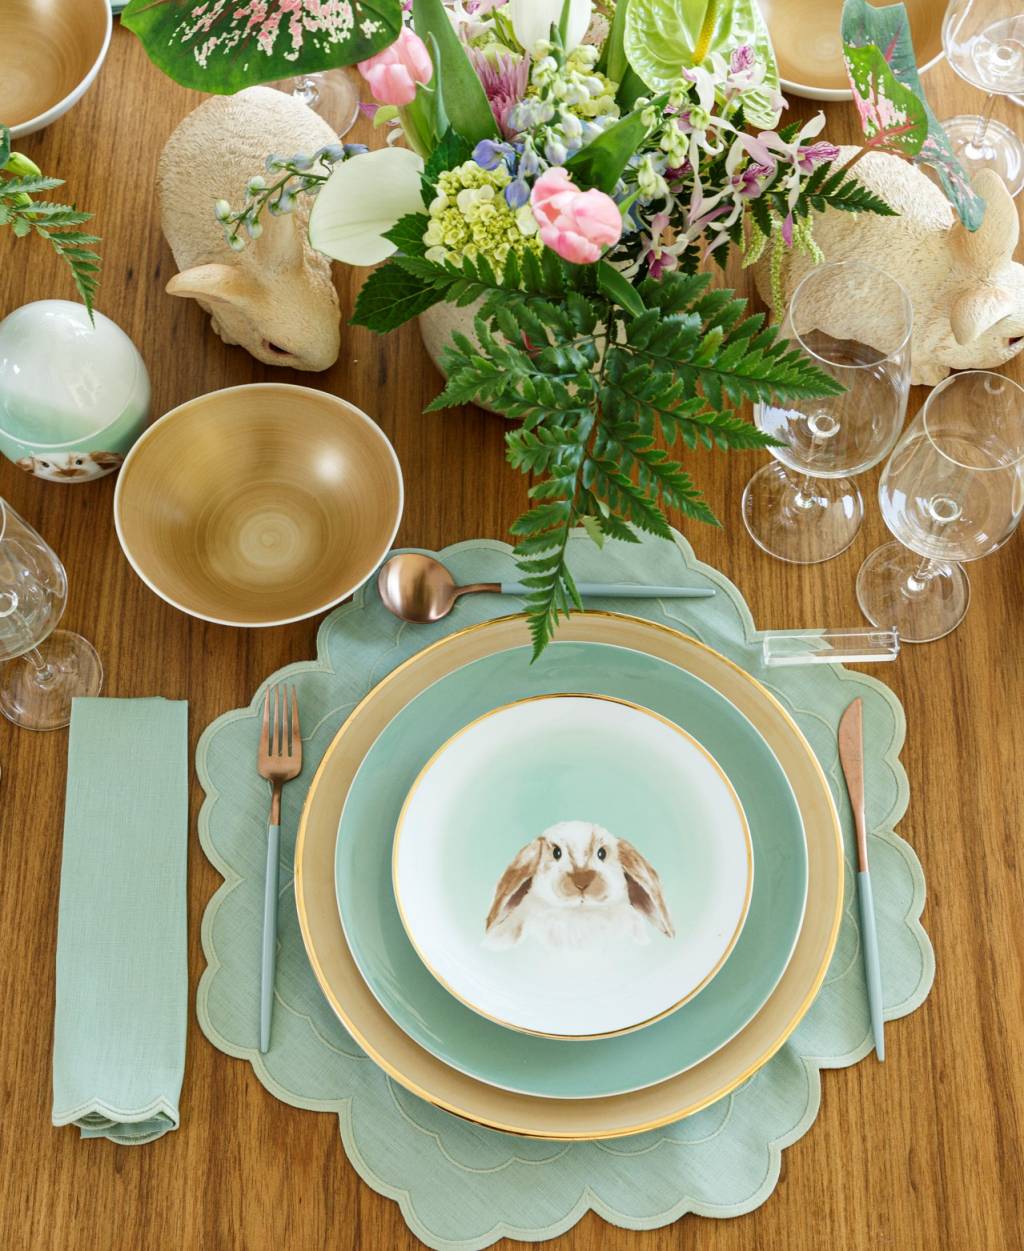 Foto exibe prato com figura de coelho no centro e vaso na mesa.